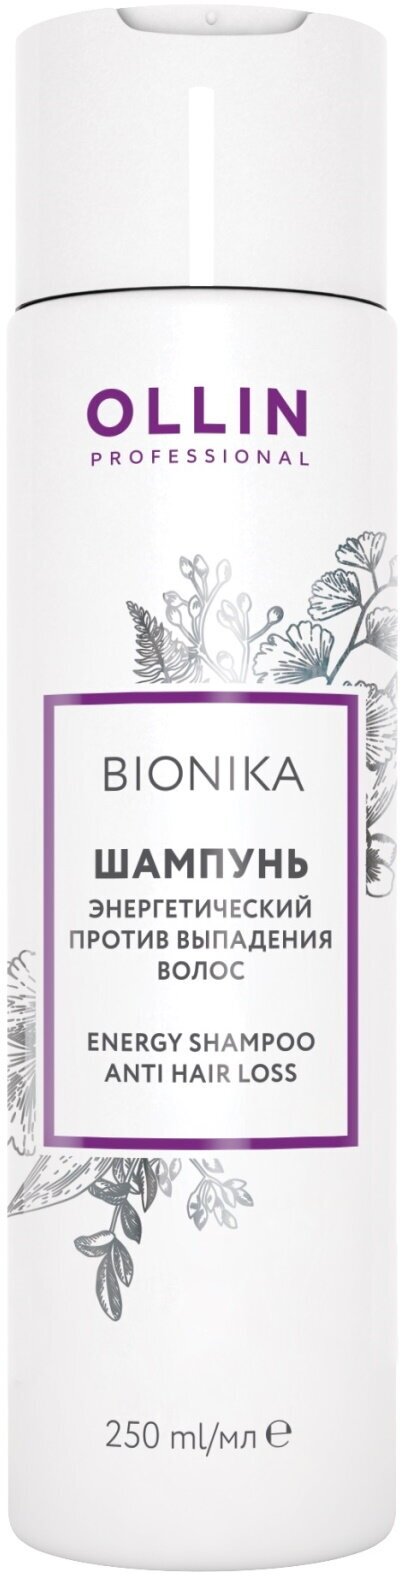 Шампунь BIONIKA против выпадения волос OLLIN PROFESSIONAL энергетический 250 мл